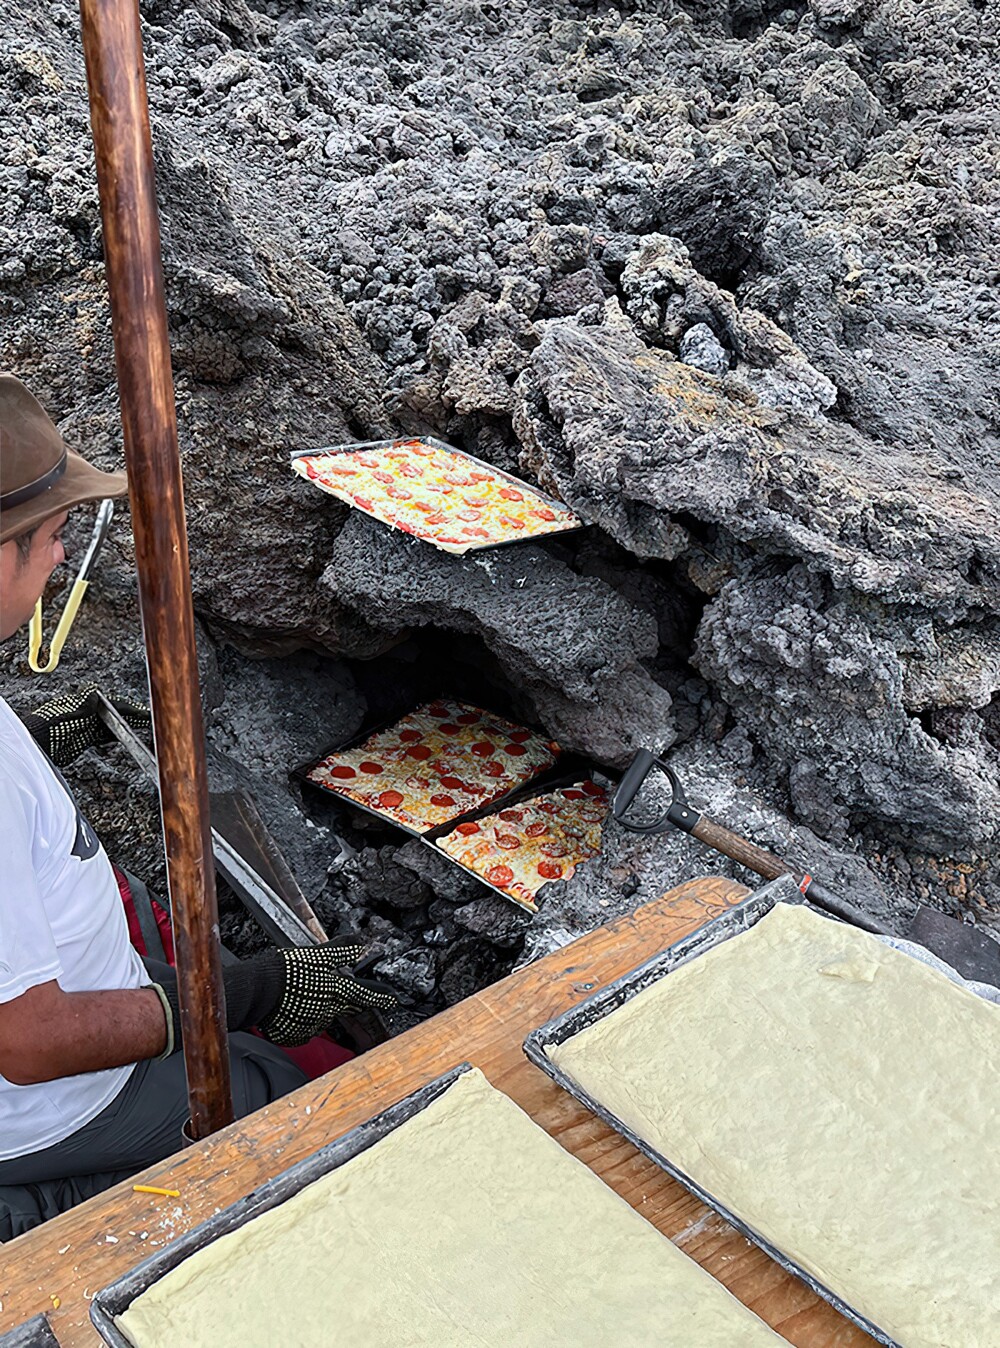 26. Пицца, которую готовят на раскалённой лаве вулкана Пакайя в Гватемале